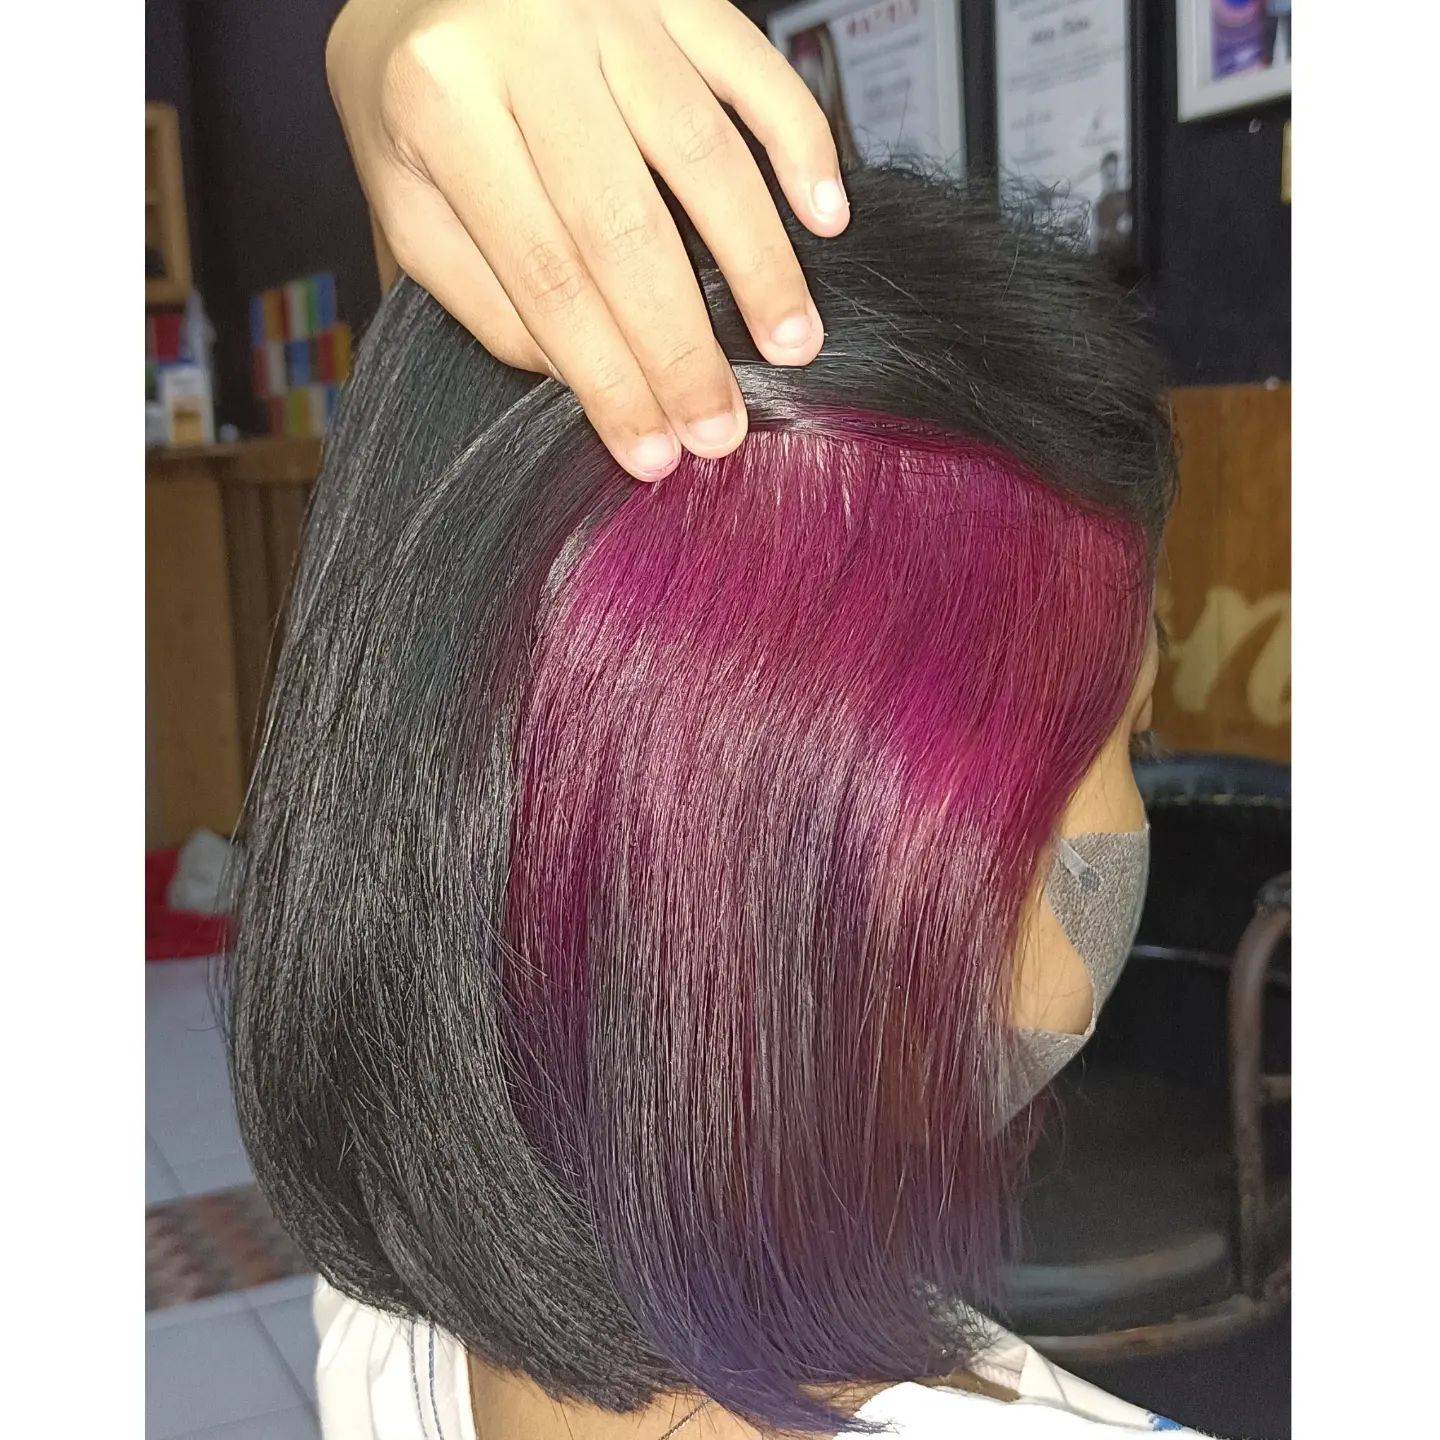 Burgundy hair color 158 burgundy hair color | burgundy hair color for women | burgundy hair color highlights Burgundy Hair Color